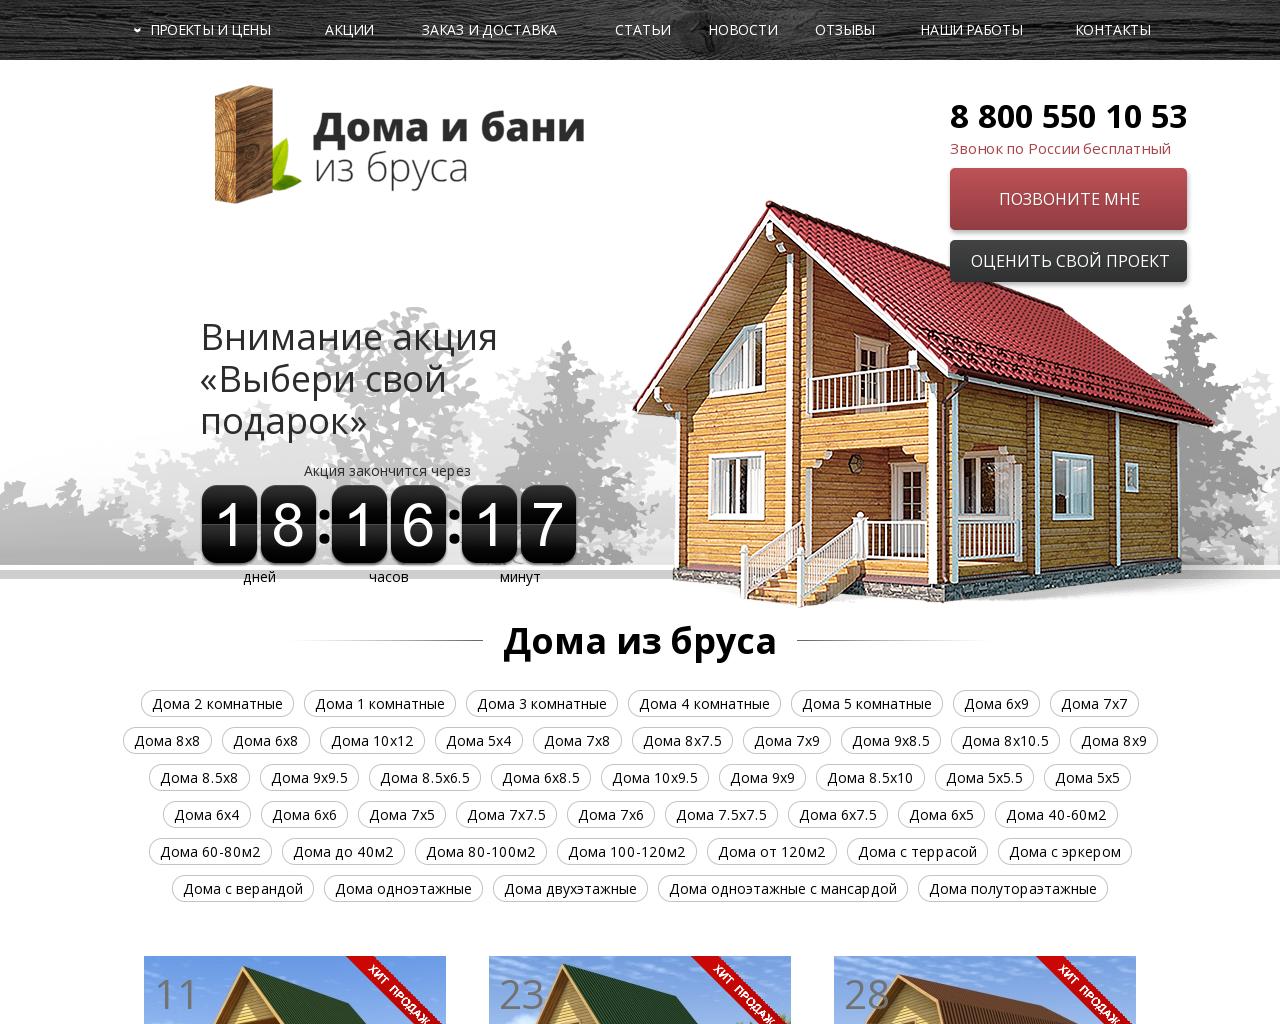 Изображение сайта domabani53.ru в разрешении 1280x1024